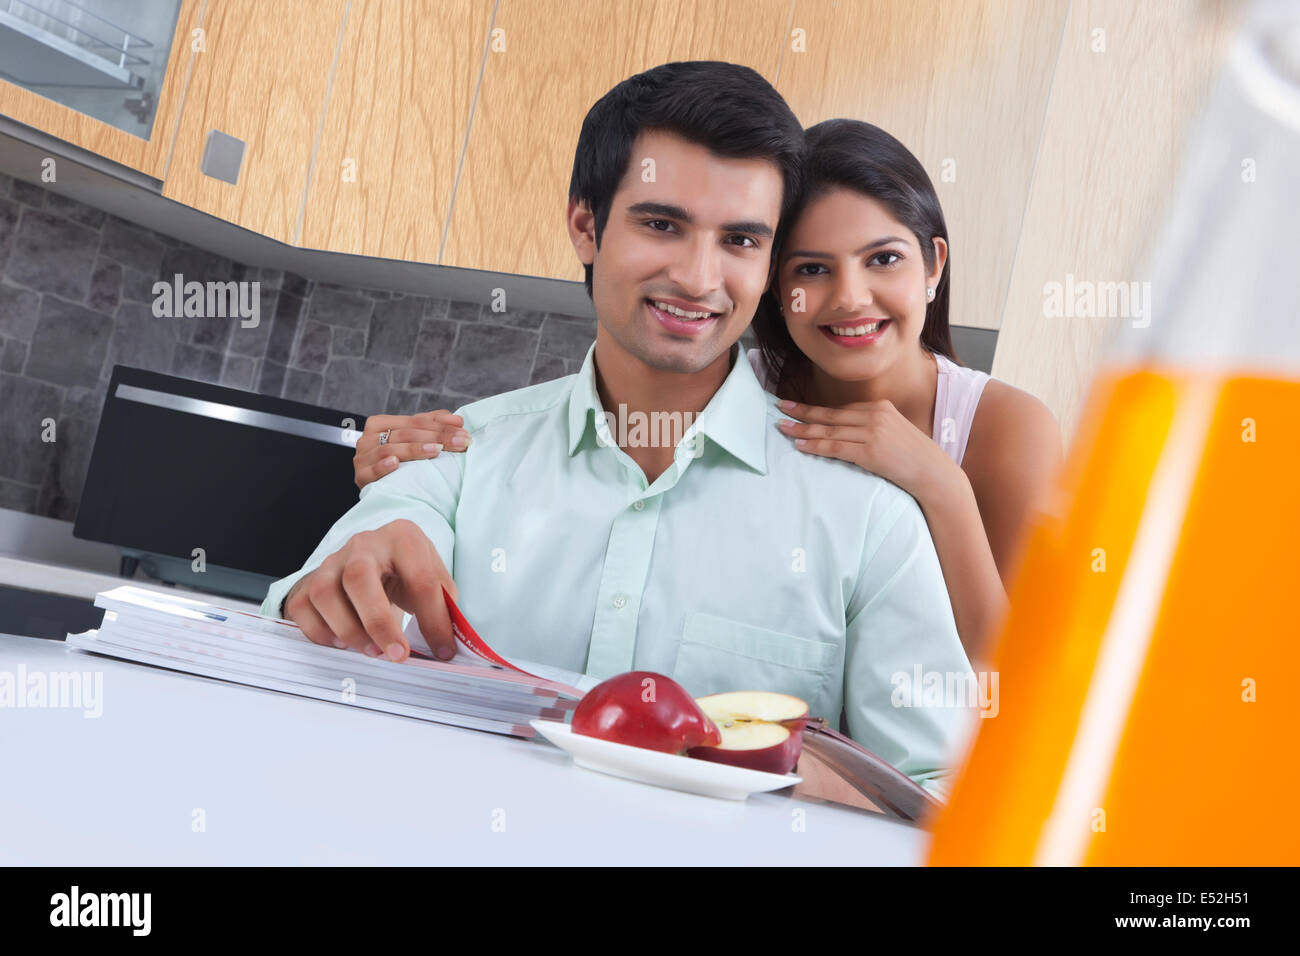 Portrait of smiling couple avec des catalogues et Apple à l'île de cuisine Banque D'Images